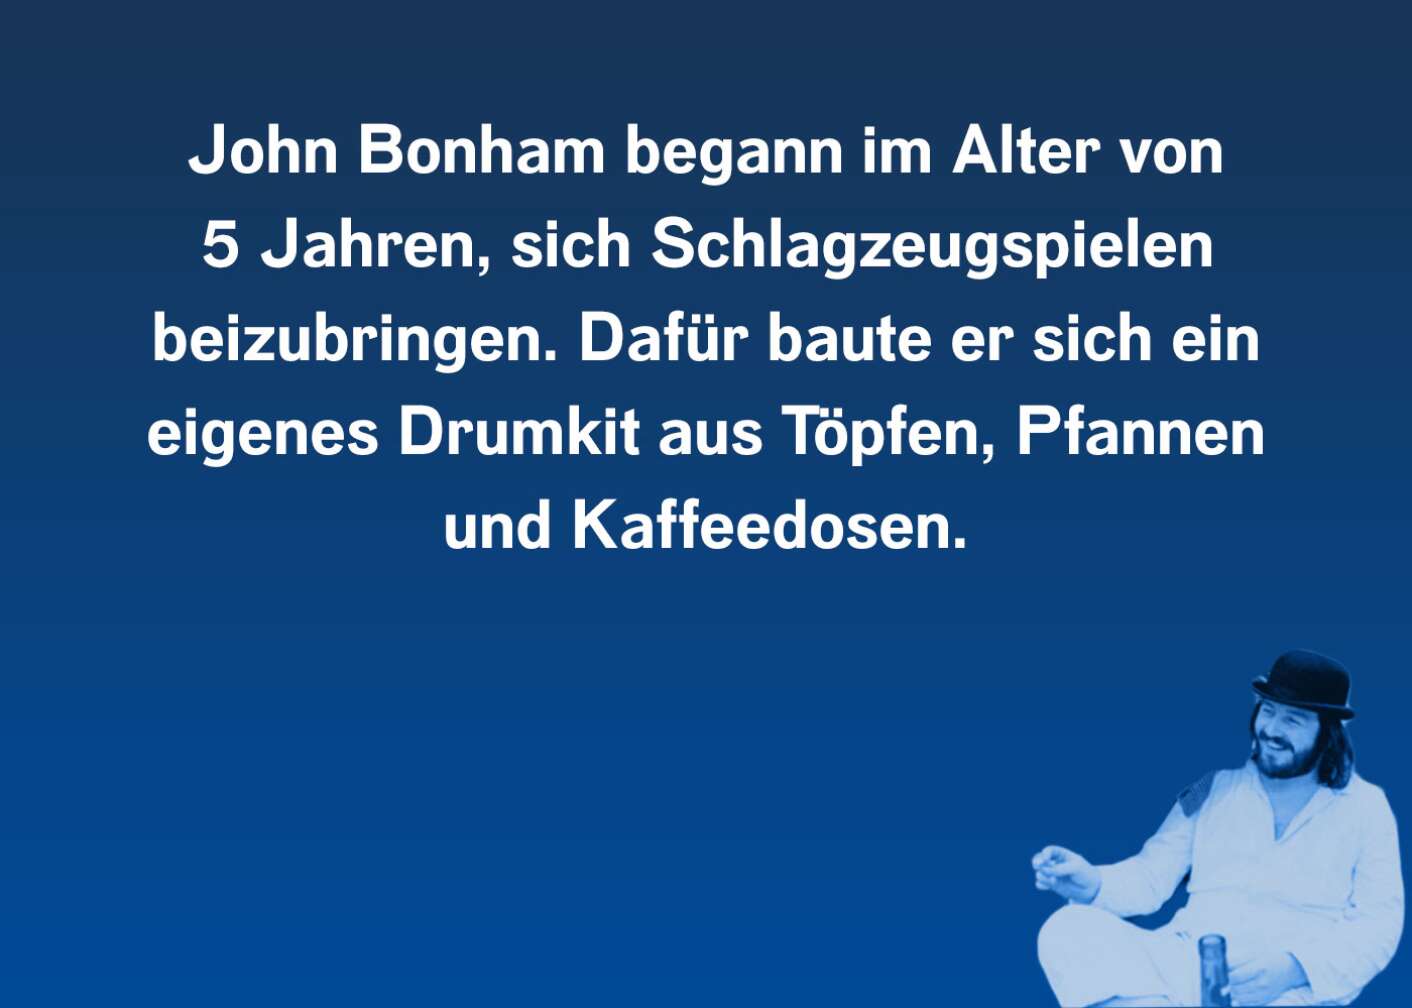 John Bonham Facts